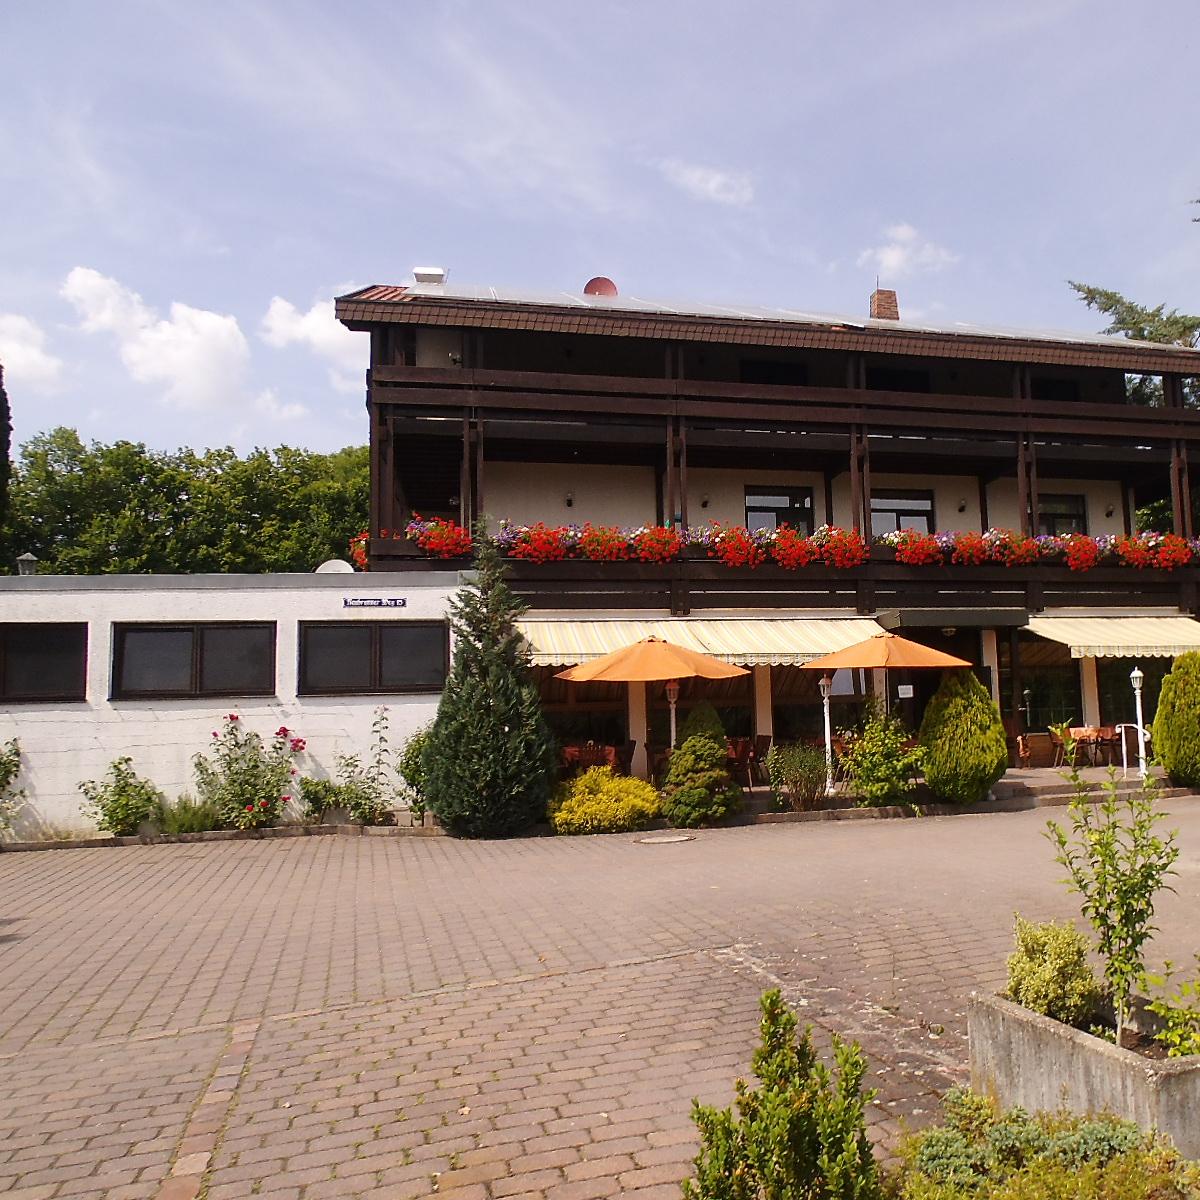 Restaurant "Hotel-Restaurant Berghof" in  Neubrunn